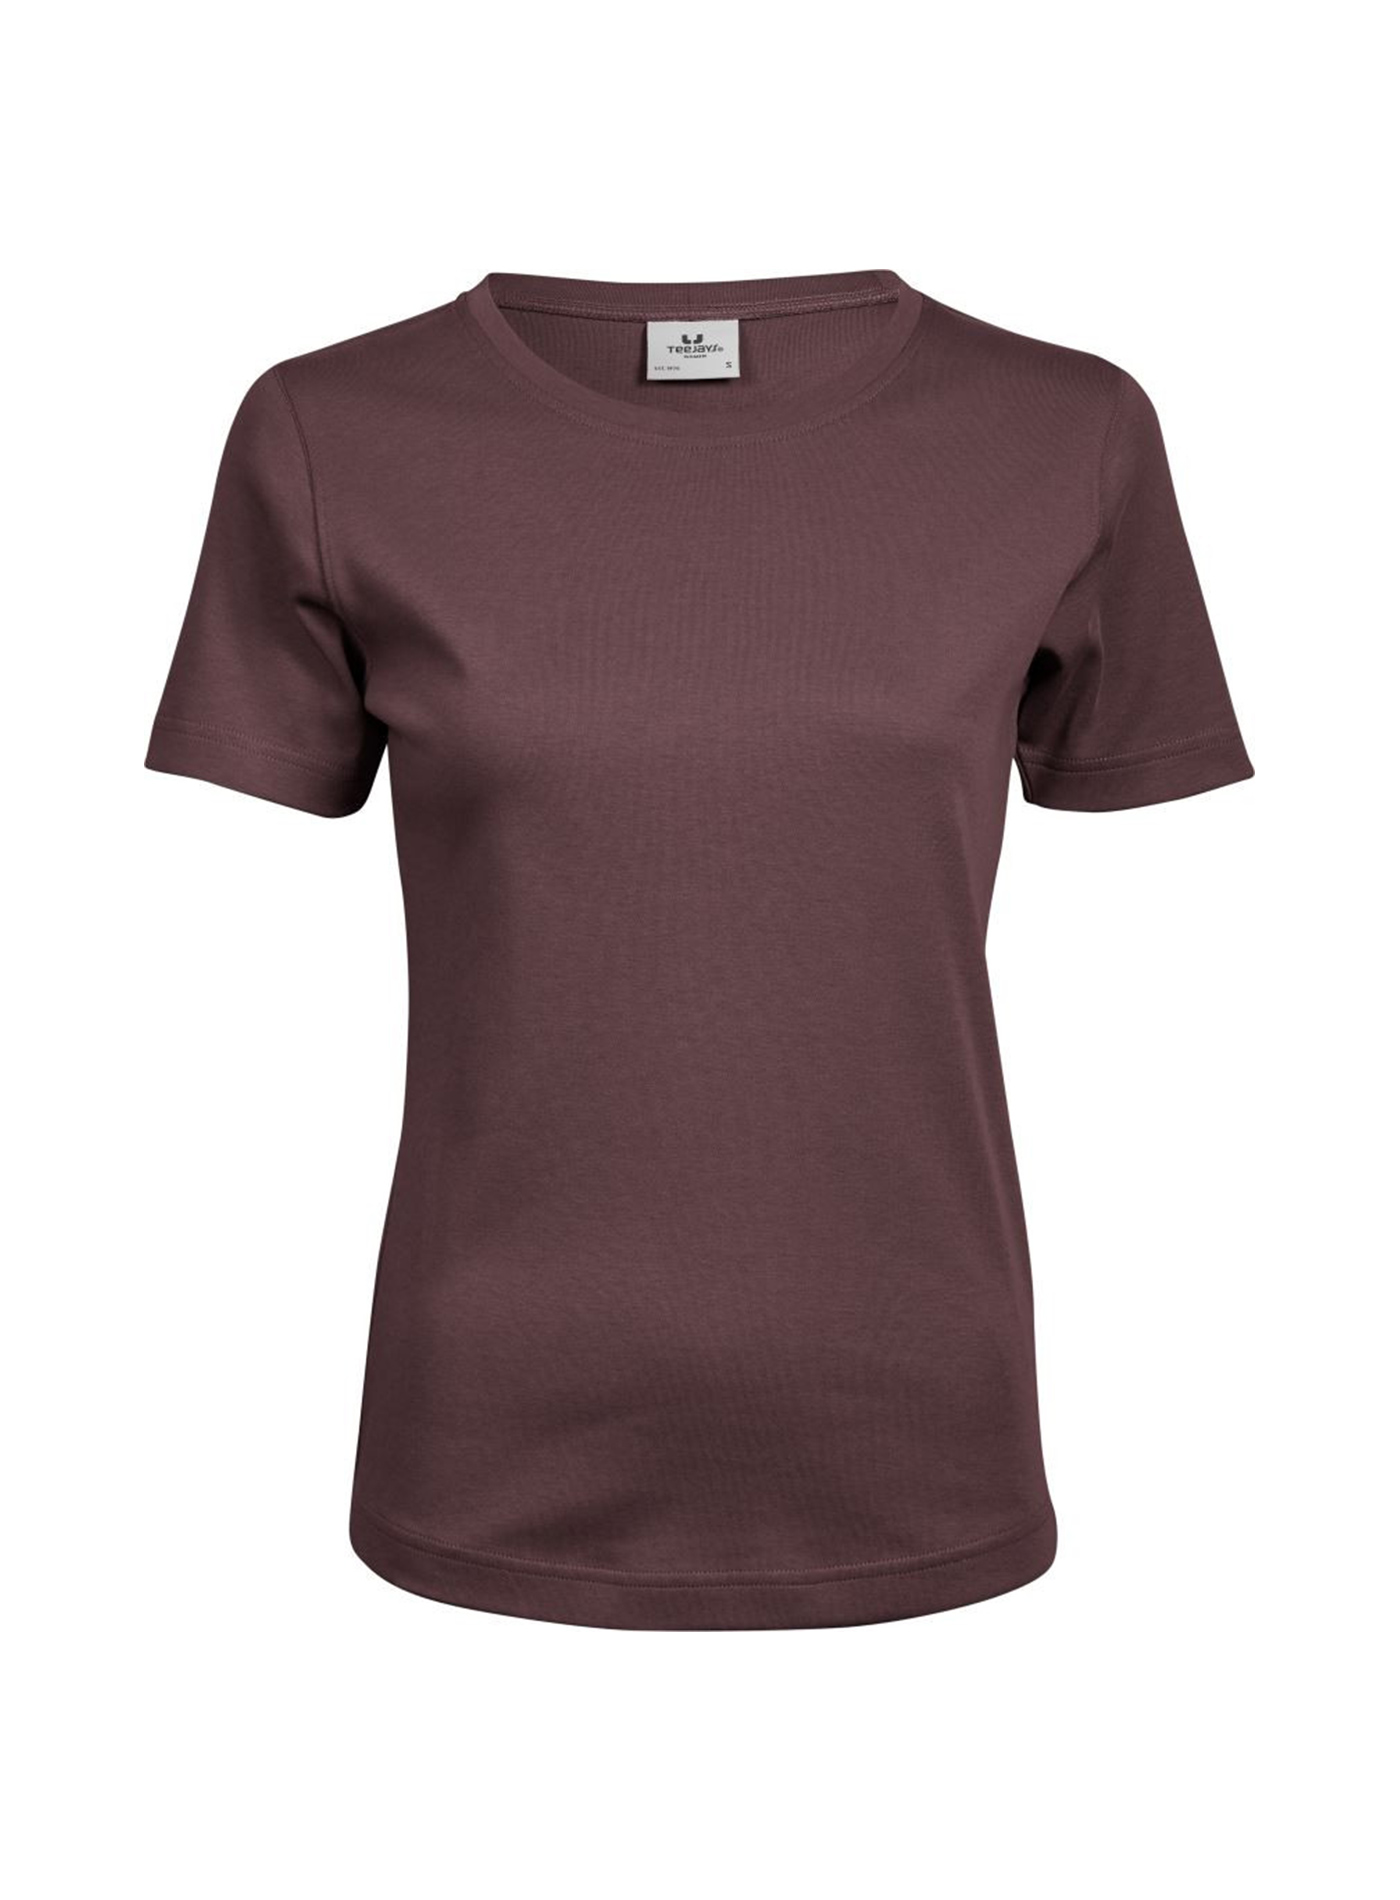 Silné bavlněné tričko Tee Jays Interlock - Hnědočervená 3XL